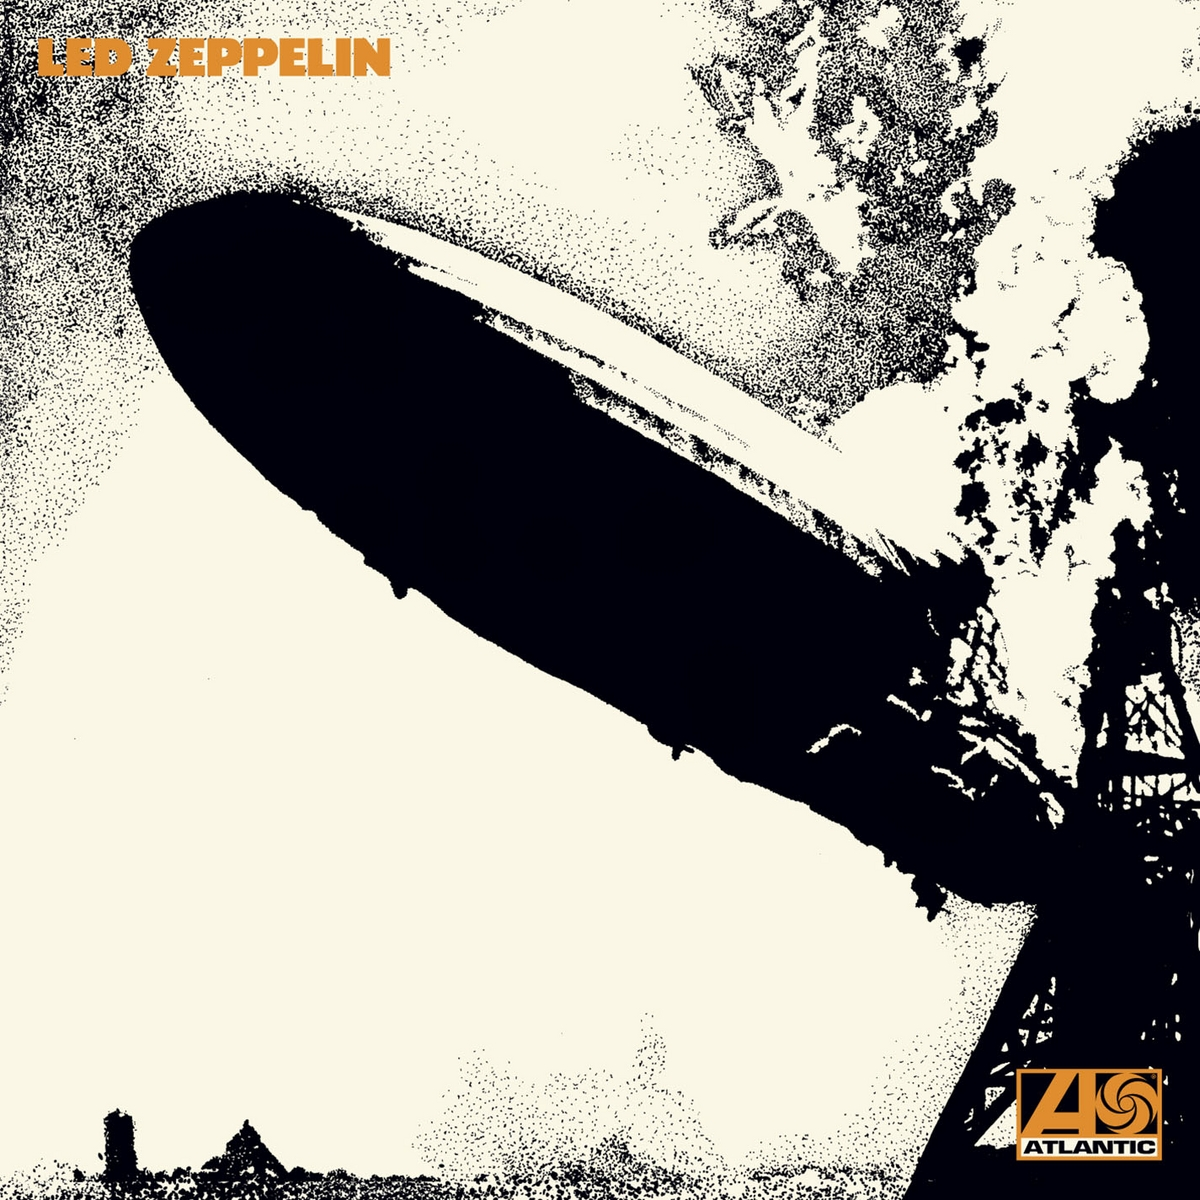 (2014 Zeppelin Zeppelin (Vinyl) Led - Led - Reissue)